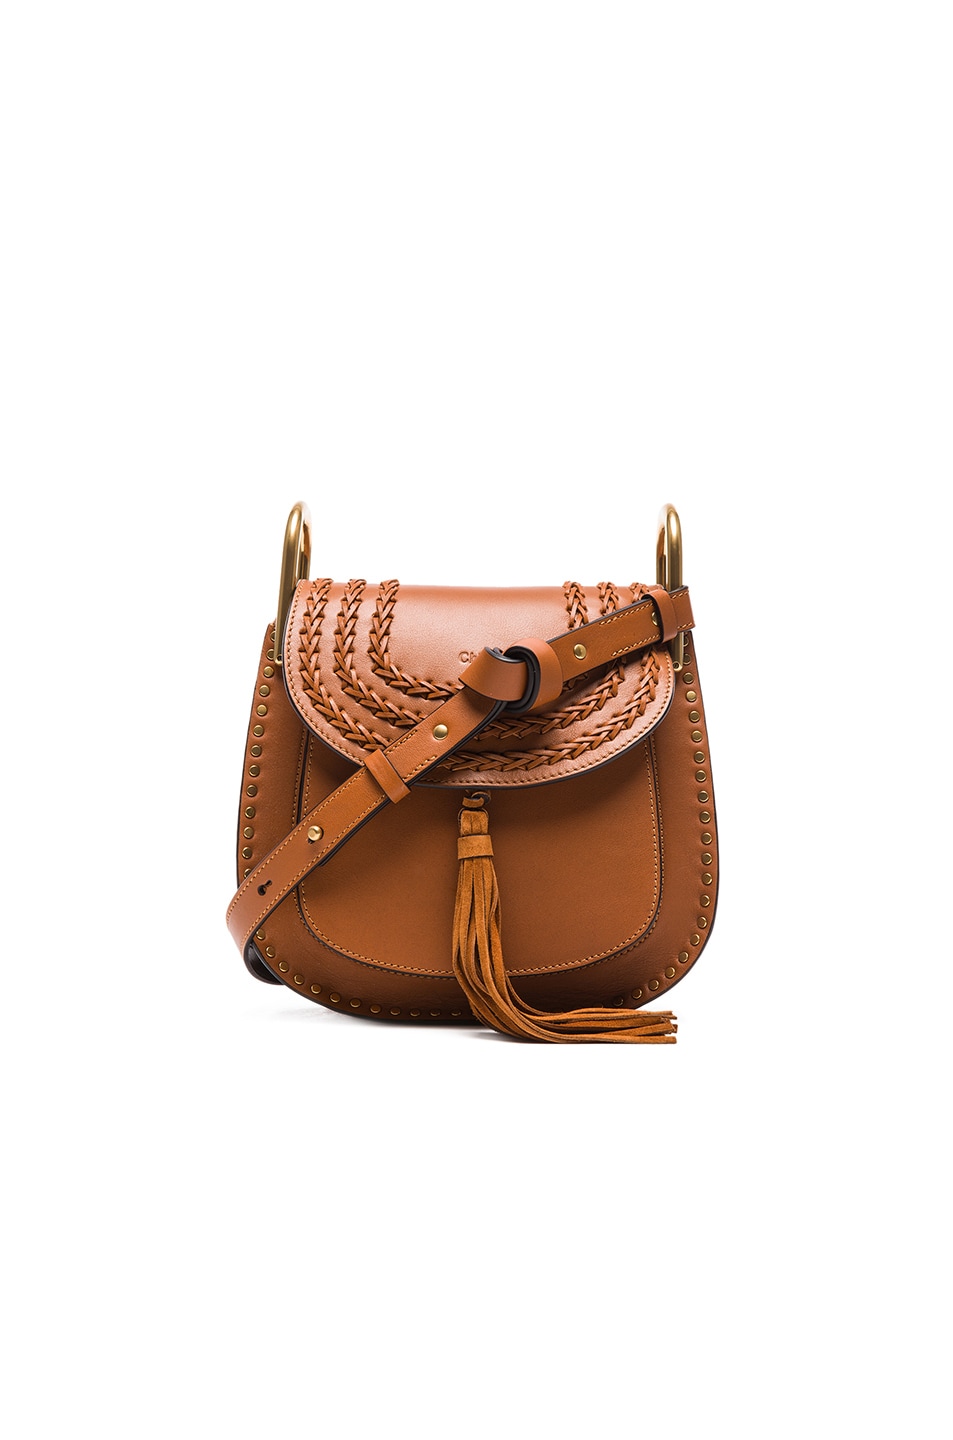 fake chloe handbags - Chloe Small Hudson Braided Leather Bag in Caramel | FWRD